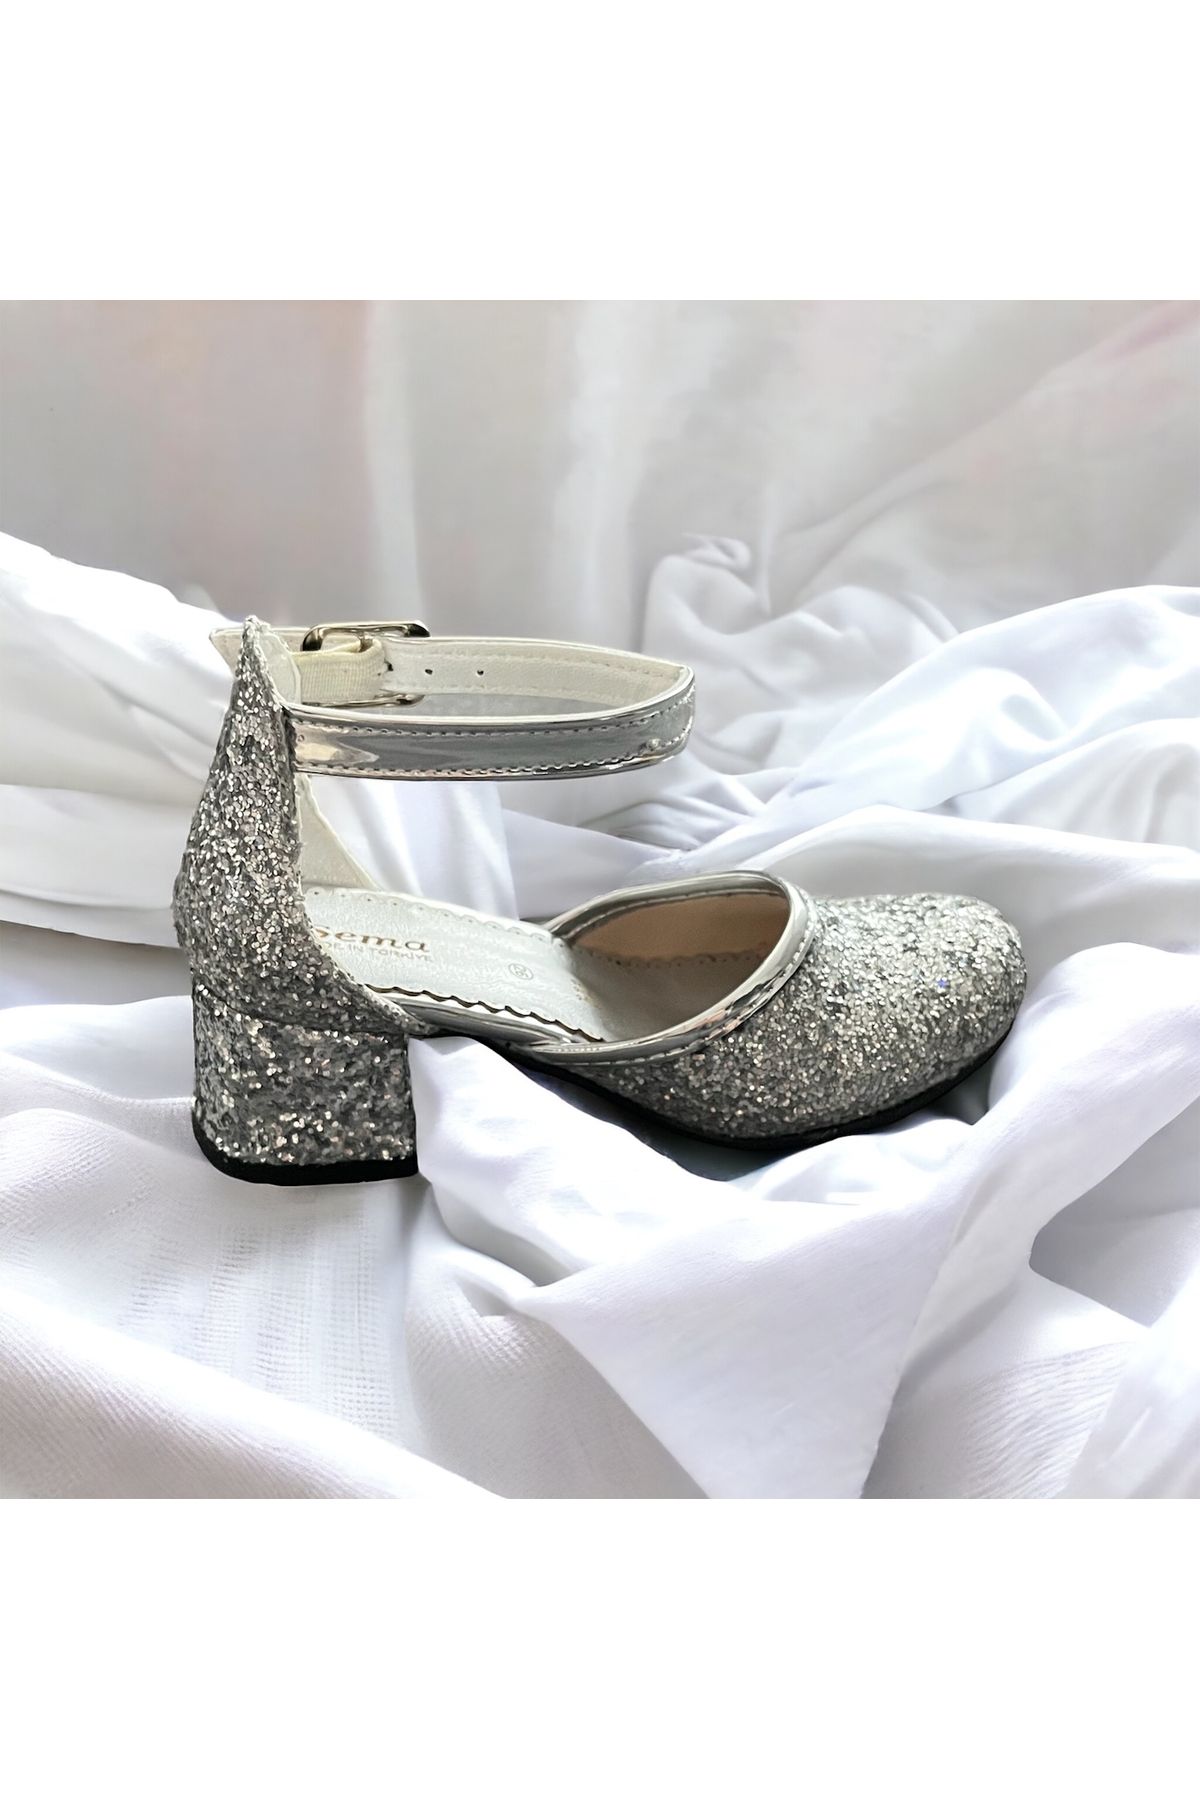 PİNKBLUEKİDSS Kız çocuk gümüş abiye topuklu ayakkabı